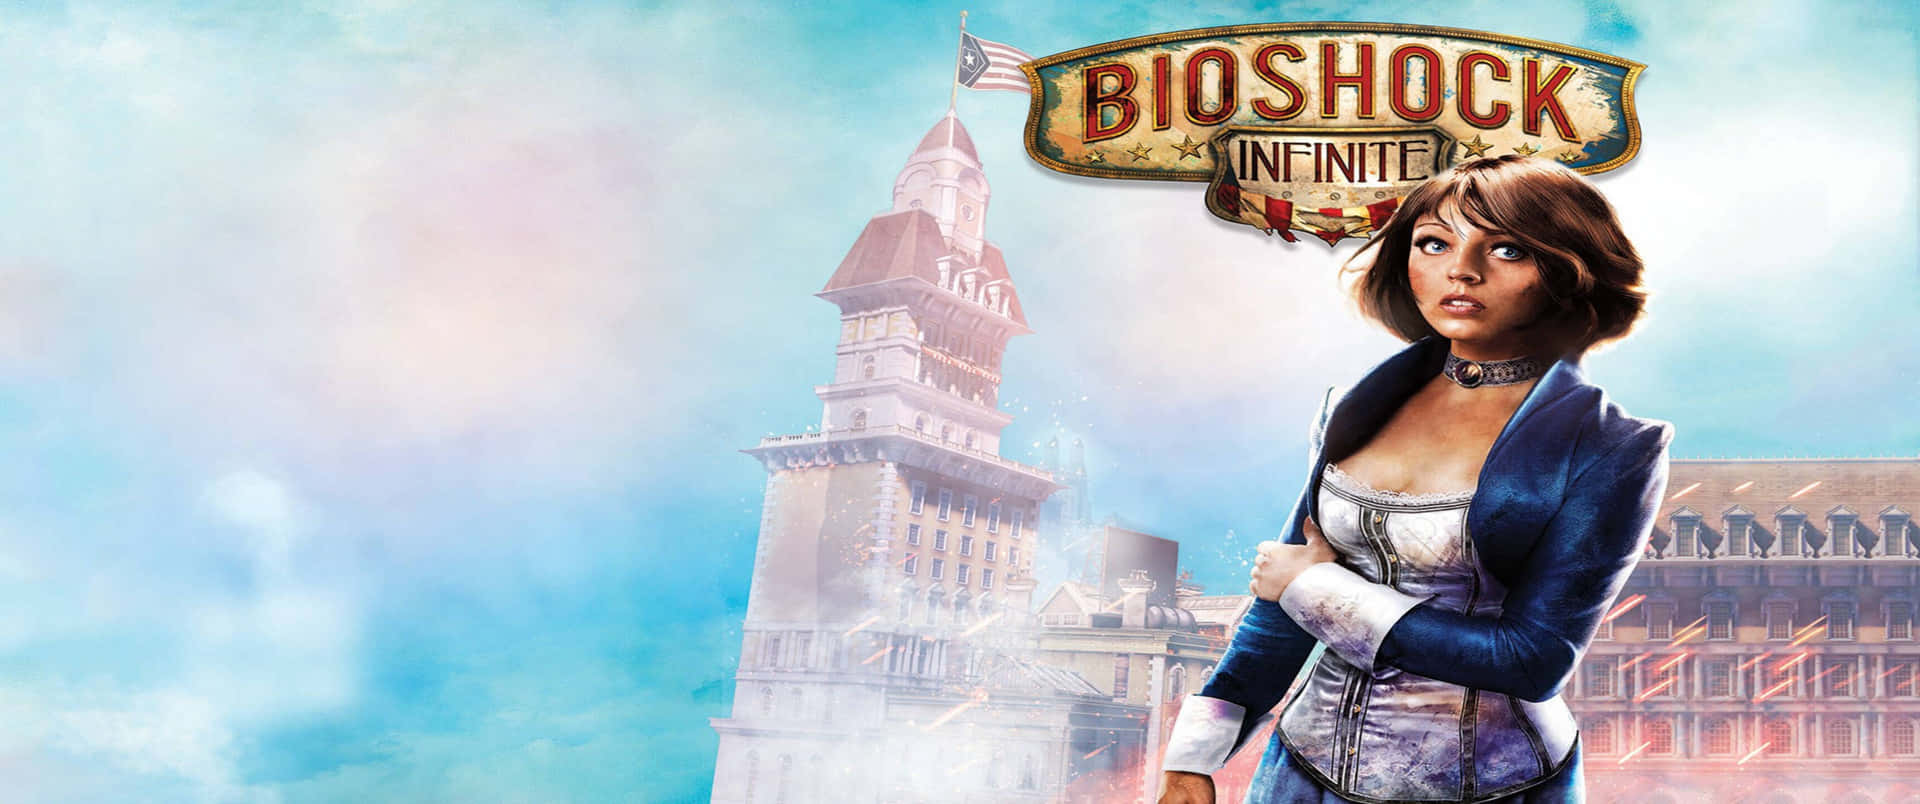 Affascinantesfondo Bioshock Infinite 3440x1440p